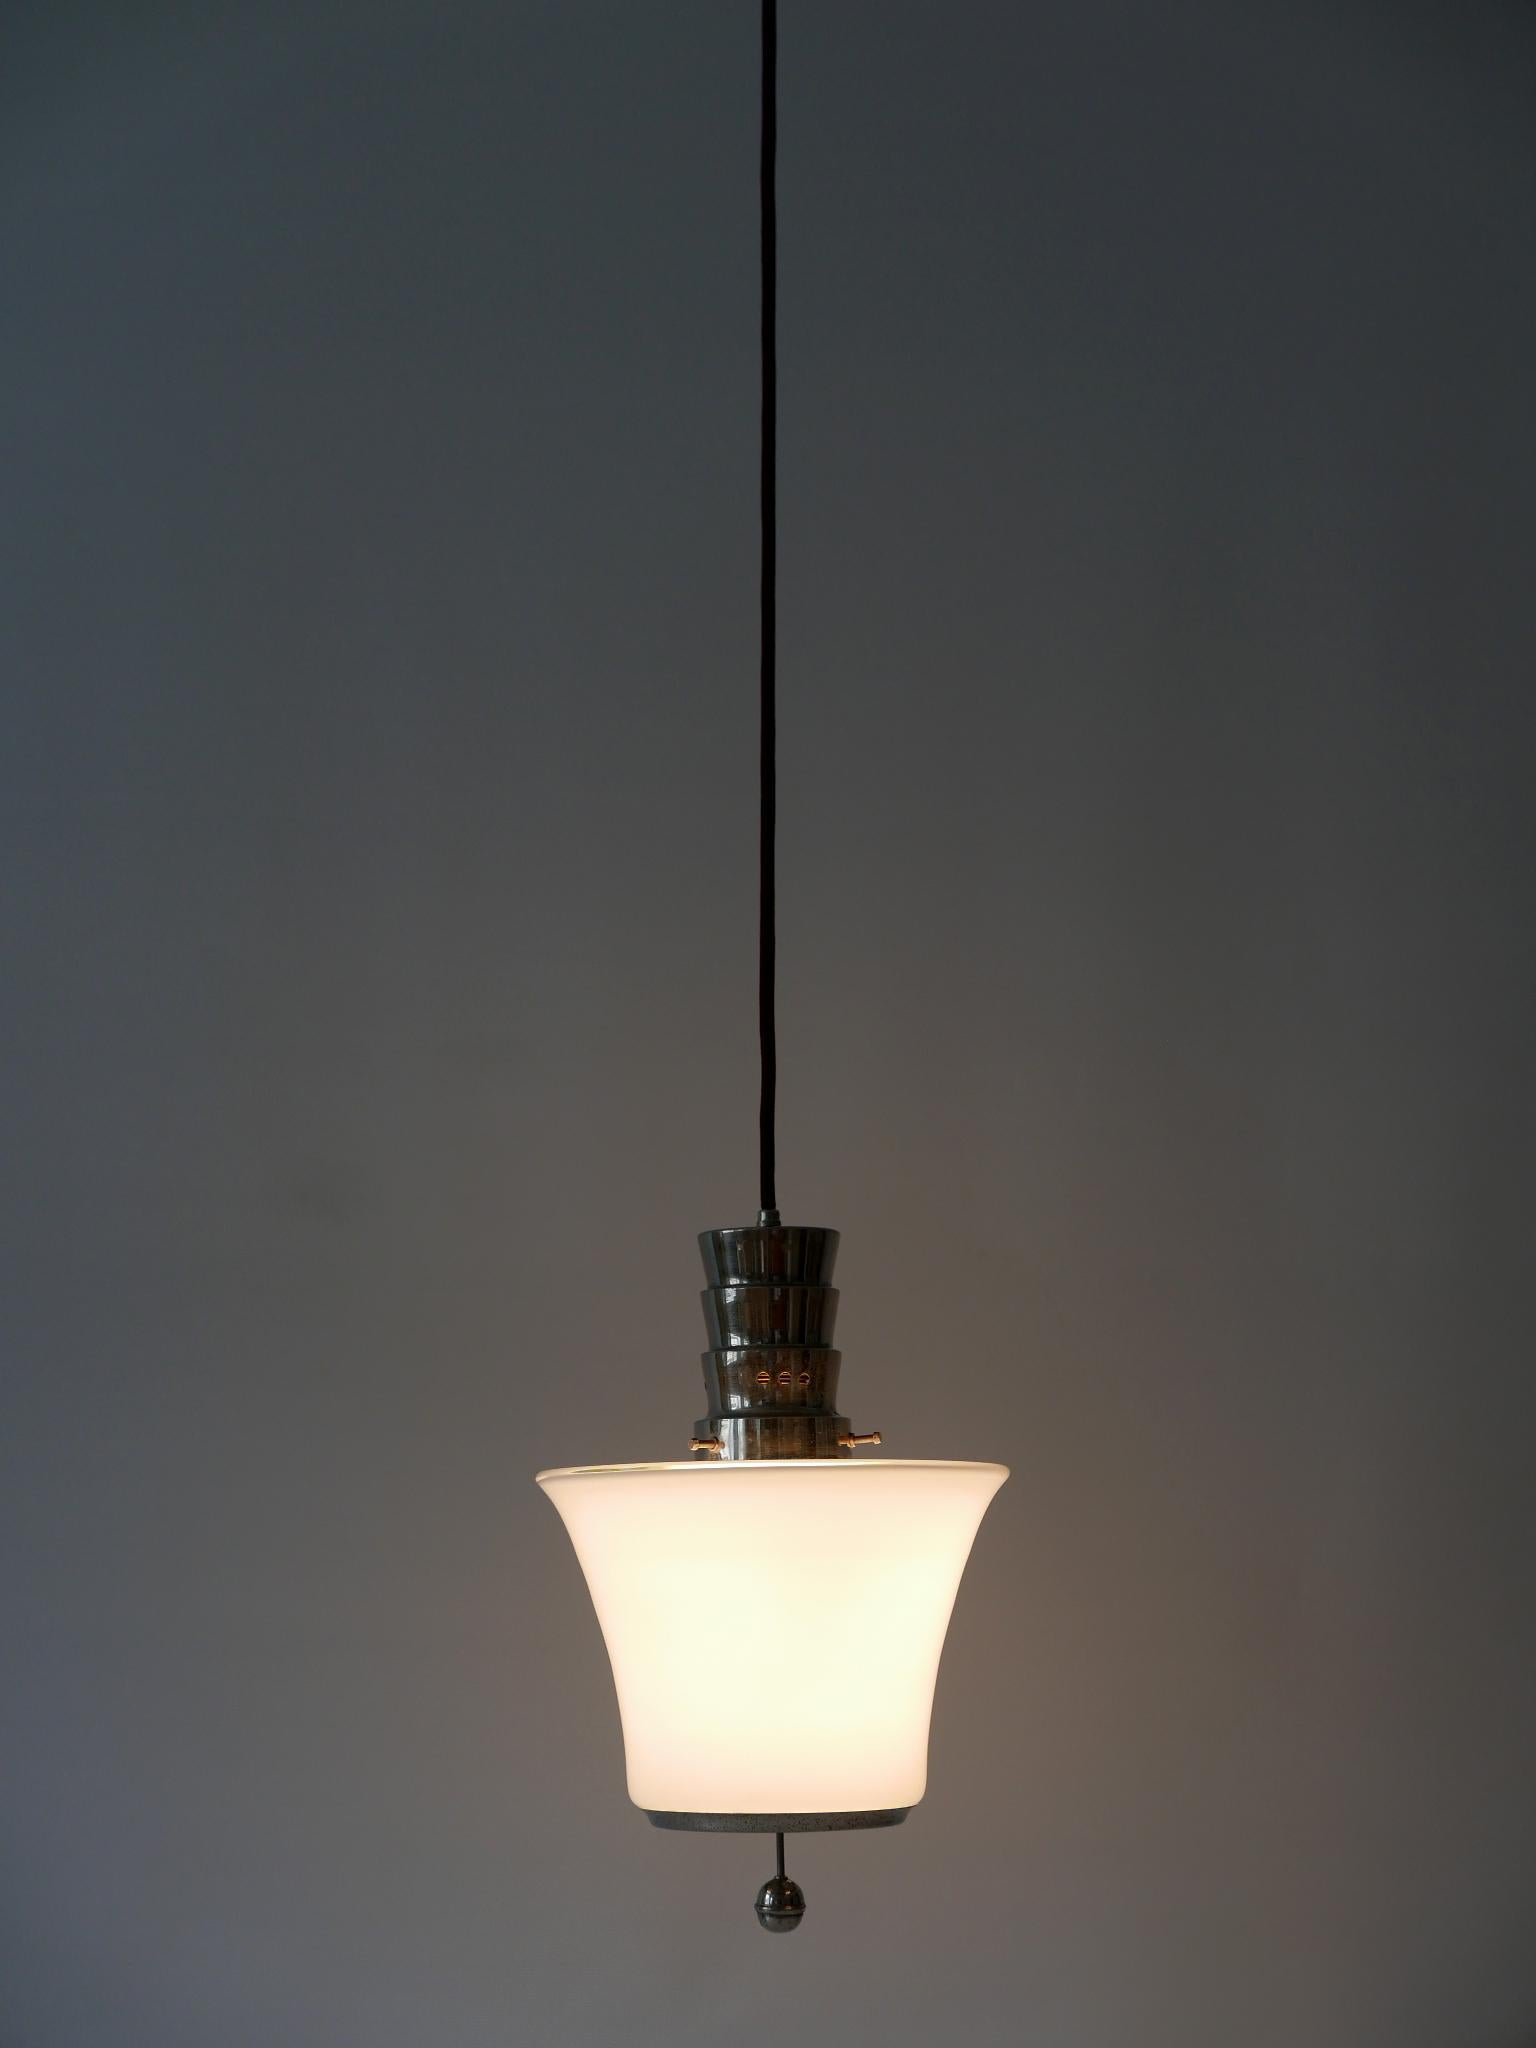 Exceptional Dr. Twerdy Original Bauhaus Art Deco Pendant Lamp, 1920s, Germany For Sale 2